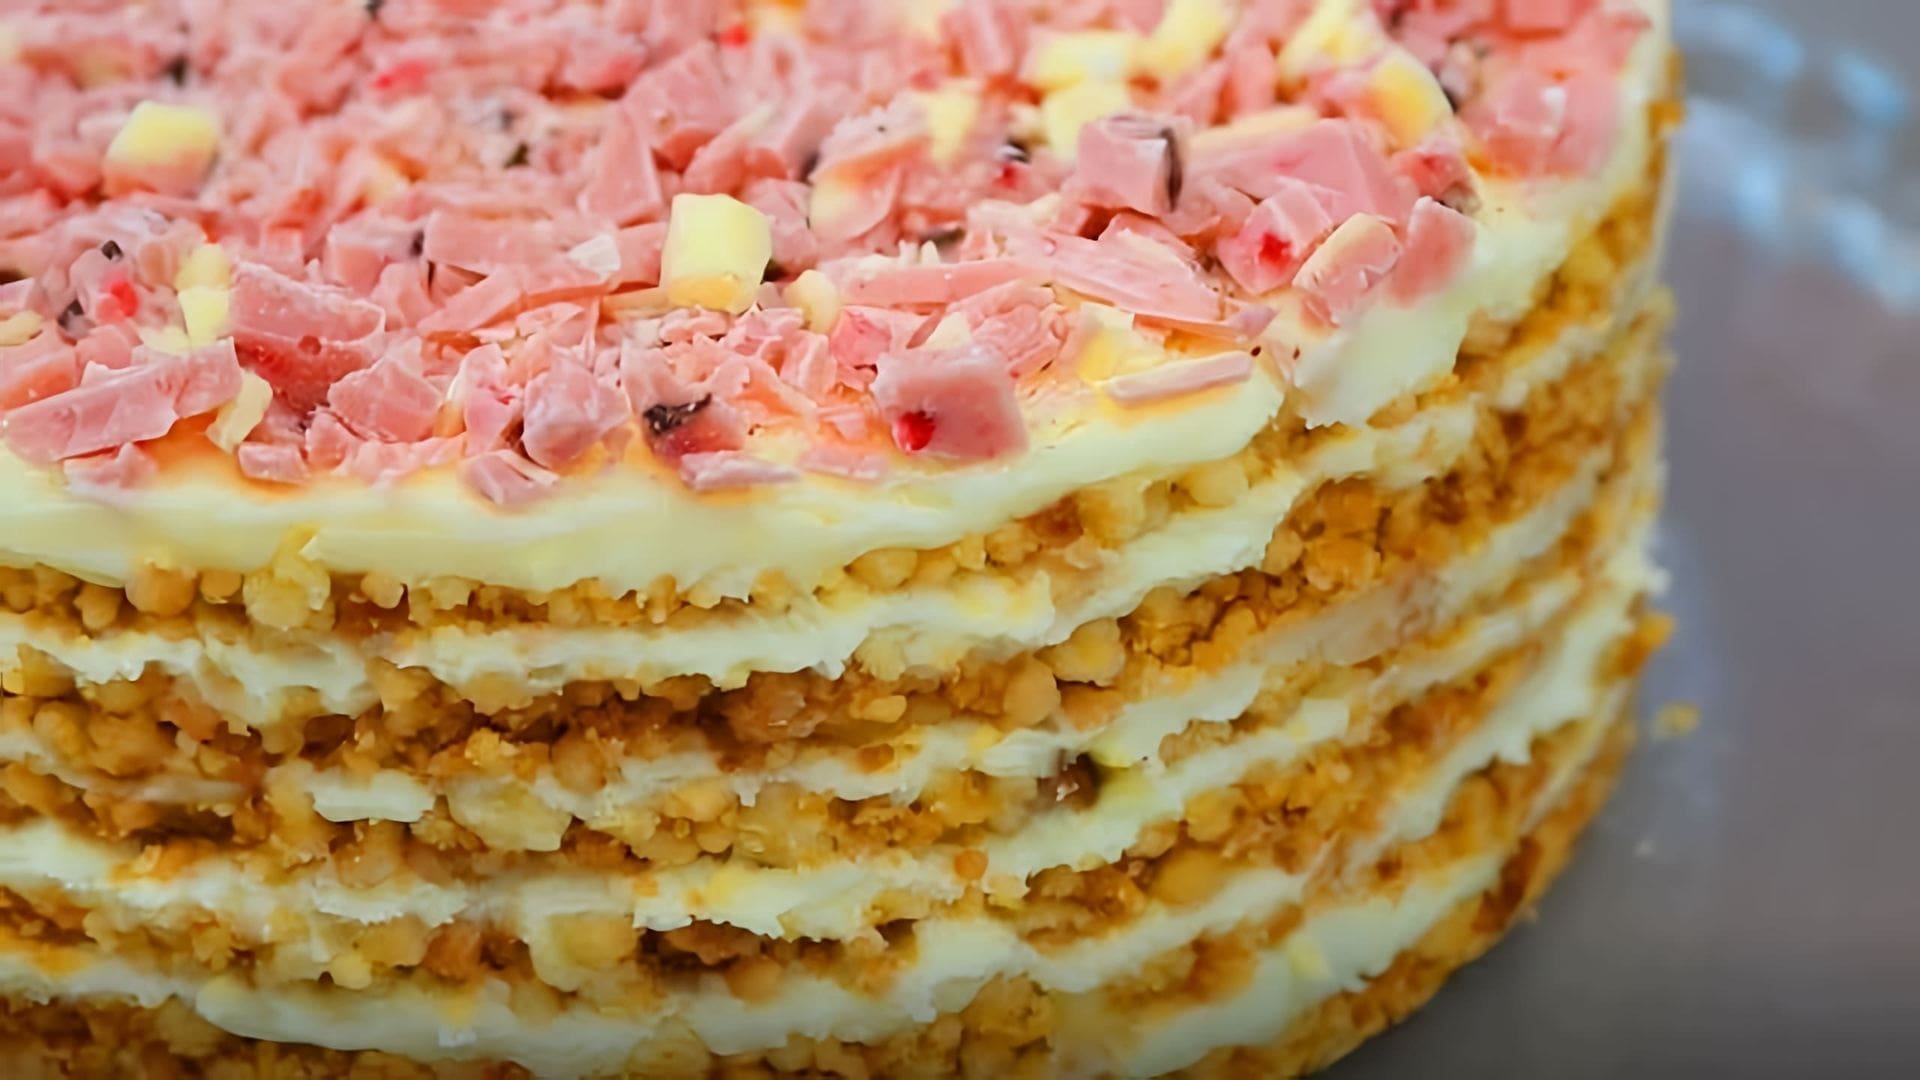 В этом видео демонстрируется рецепт приготовления торта без выпечки, который называется "Самый модный торт из крошки"